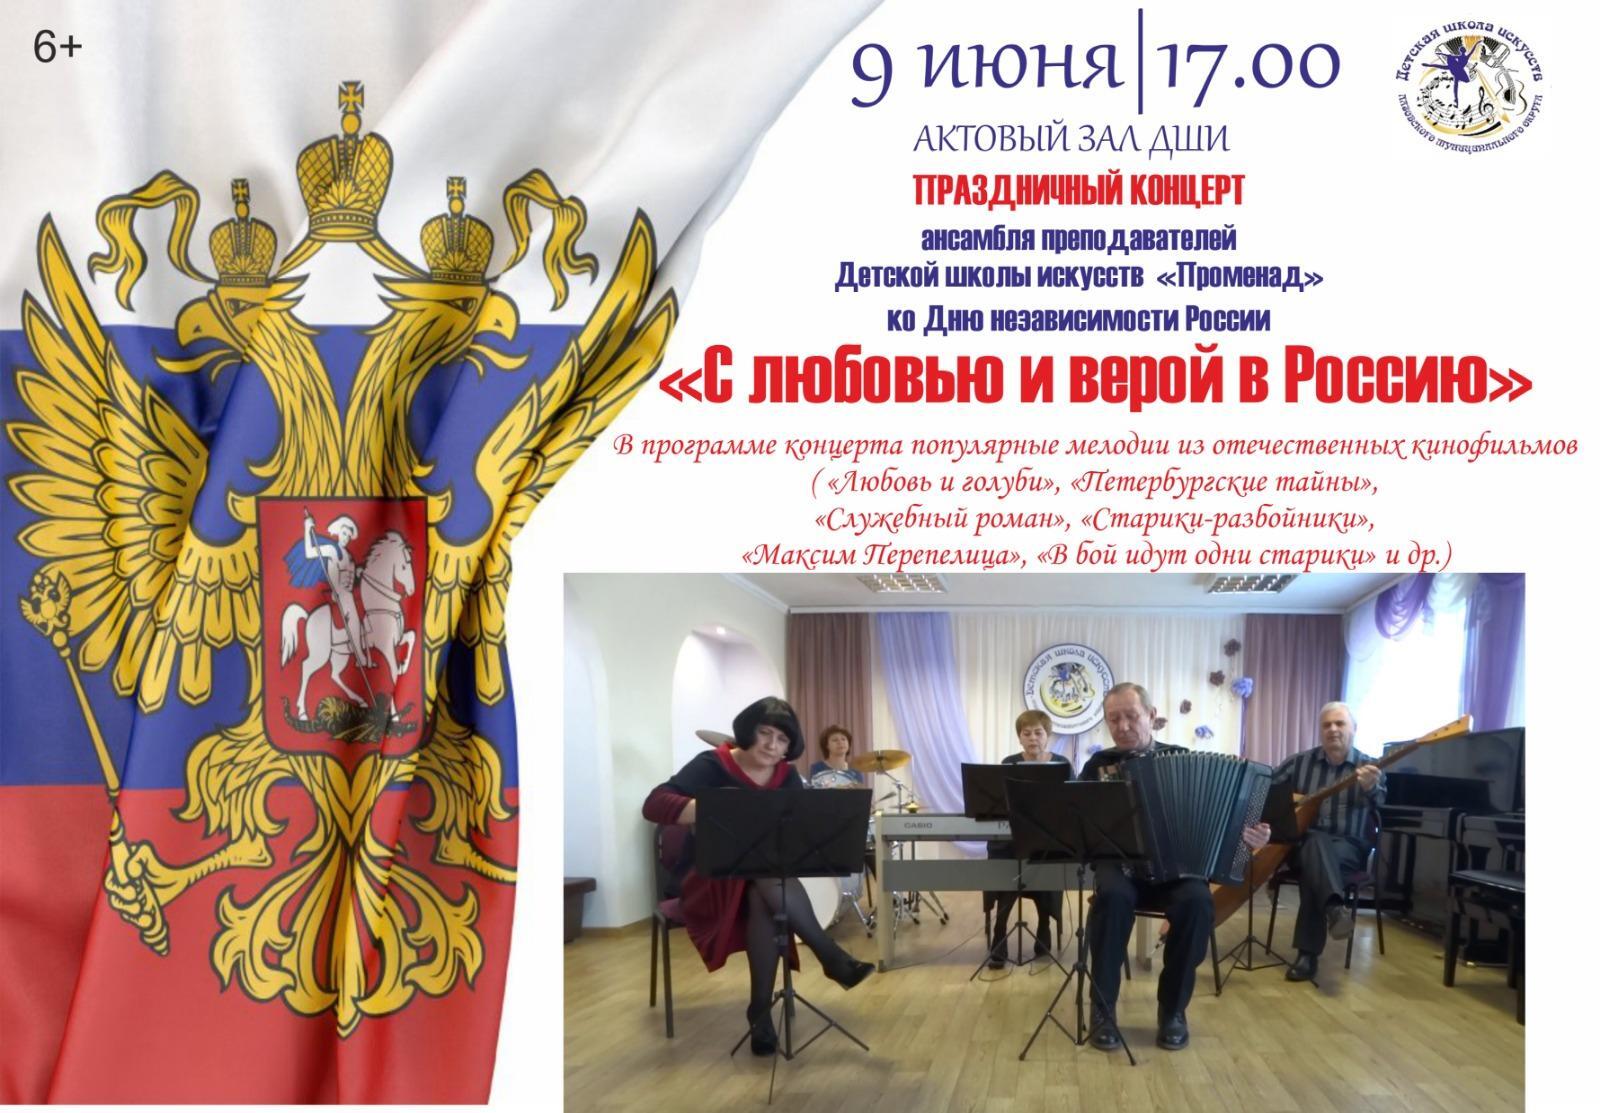 Праздничный концерт ко Дню независимости России.